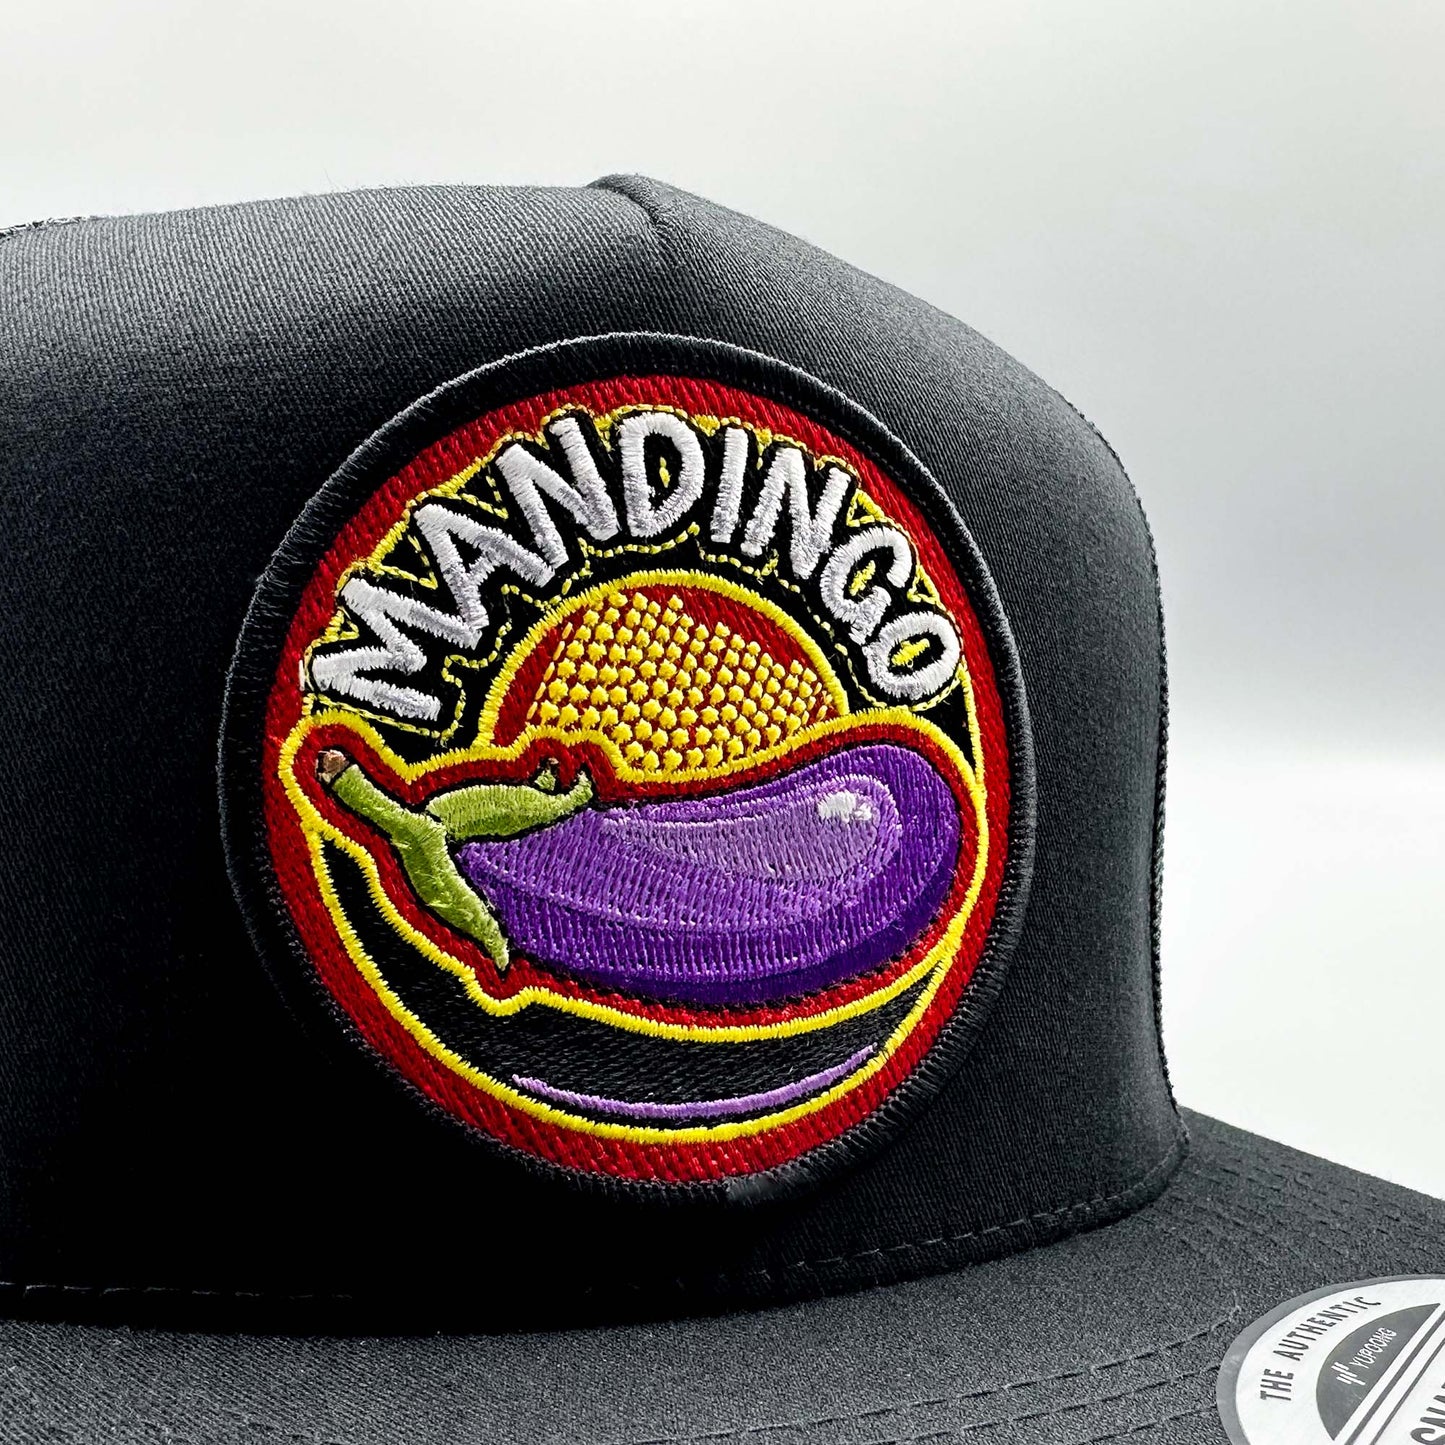 Mandingo Funny Trucker Hat